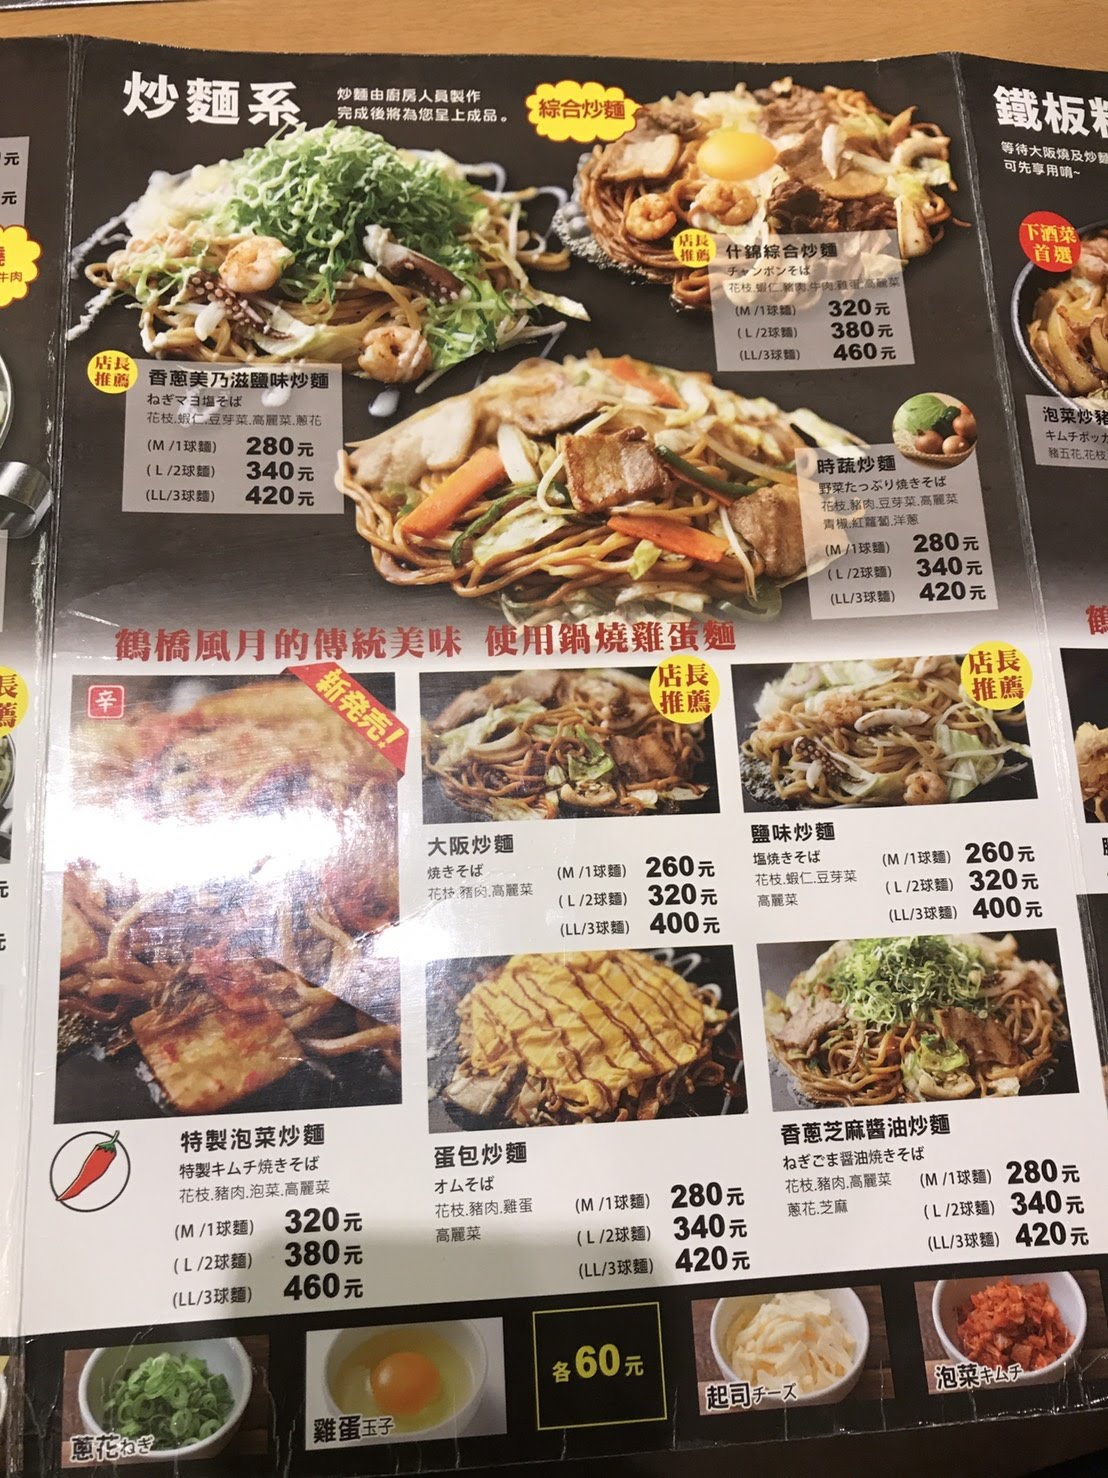 鶴橋風月菜單